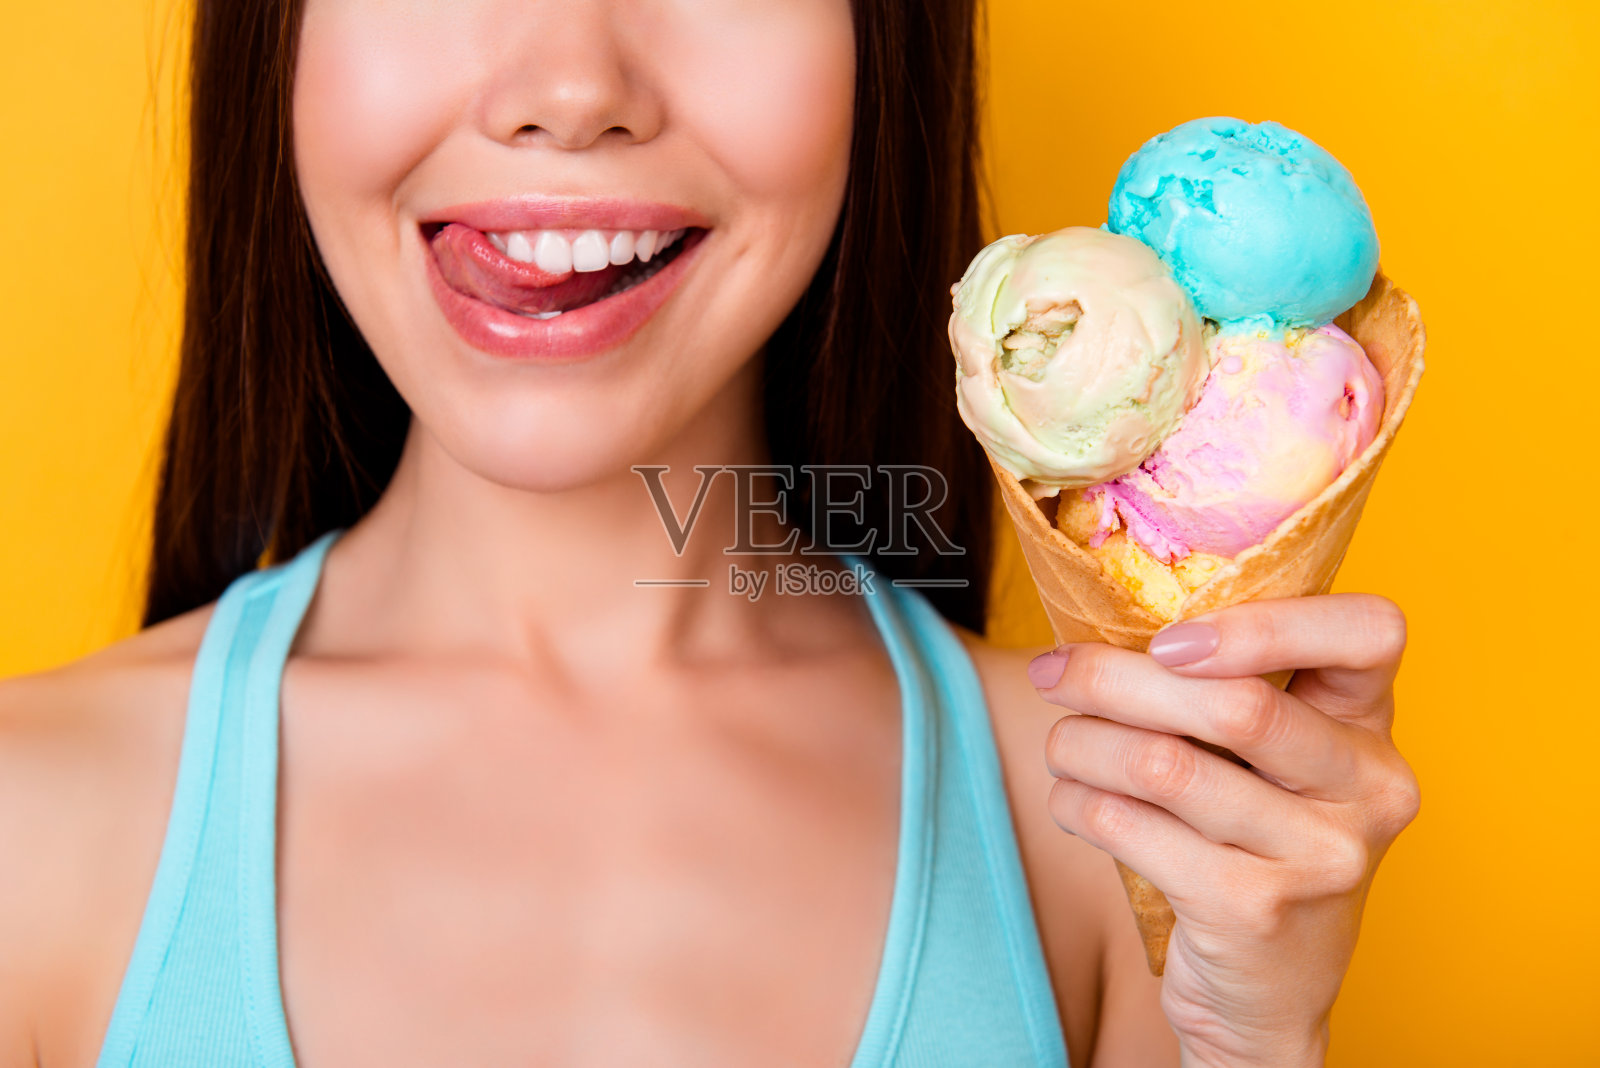 吃冰淇凌的小女孩顶视图 库存照片. 图片 包括有 可口, 愉快, 点心, 降低, 幸福, 奶油, 女儿, 冻结 - 96850484